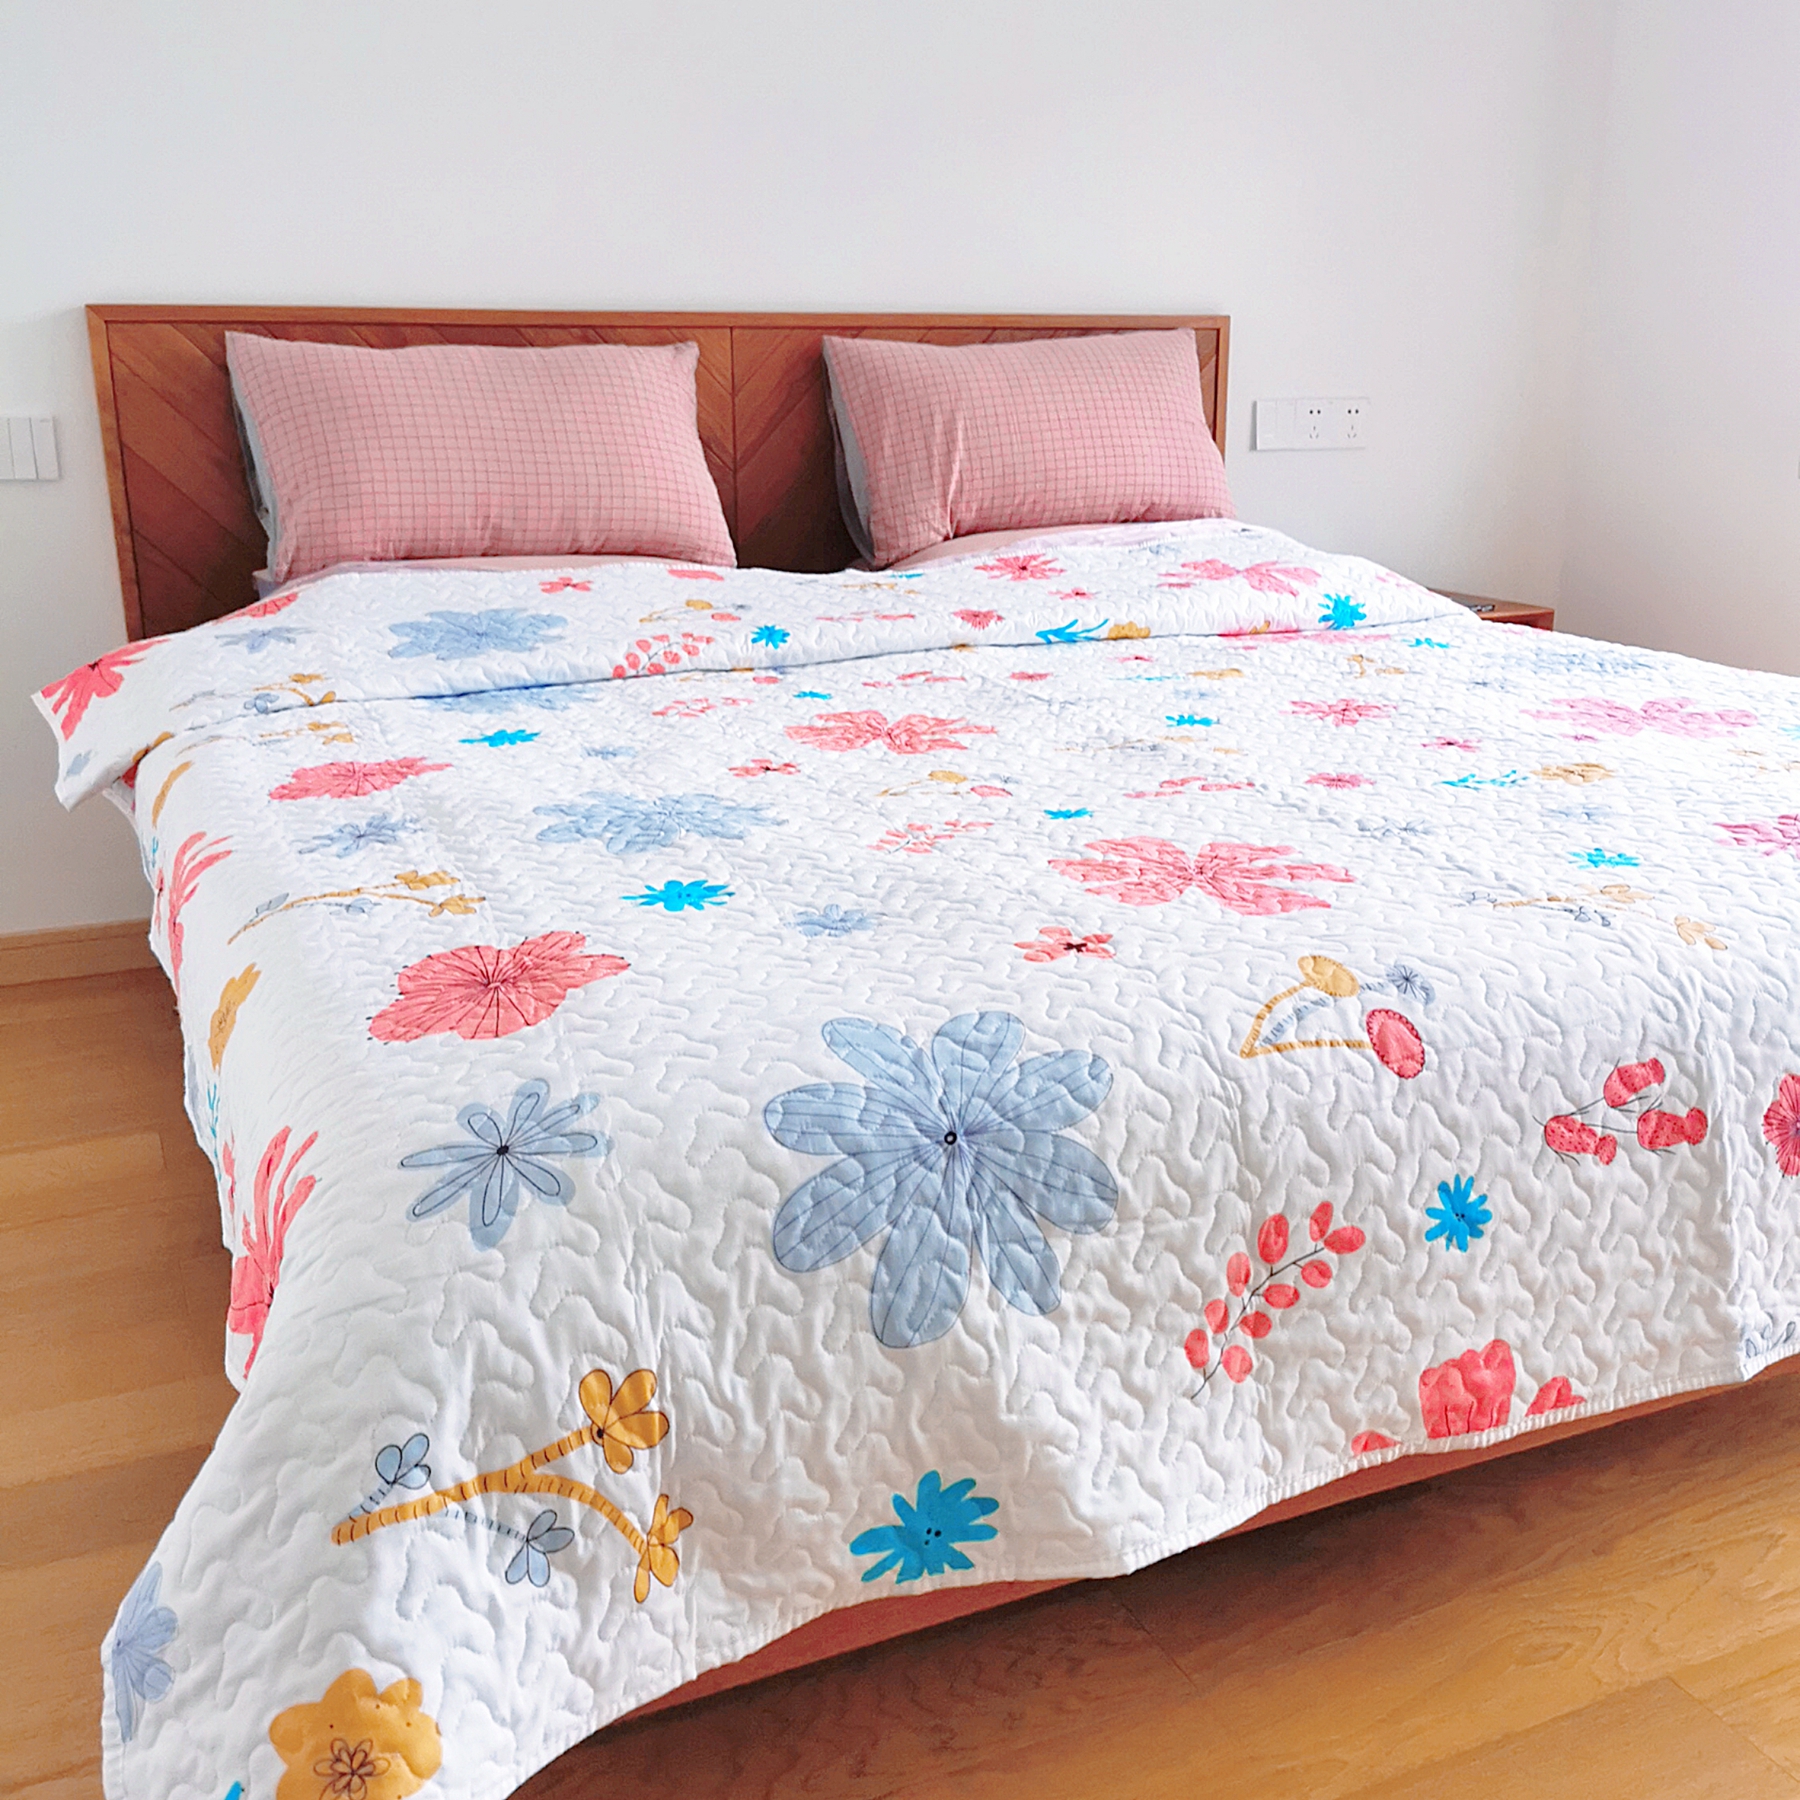 绗缝床单双面夹棉四季被多功用床盖榻榻米床垫褥铺沙发韩式可折叠